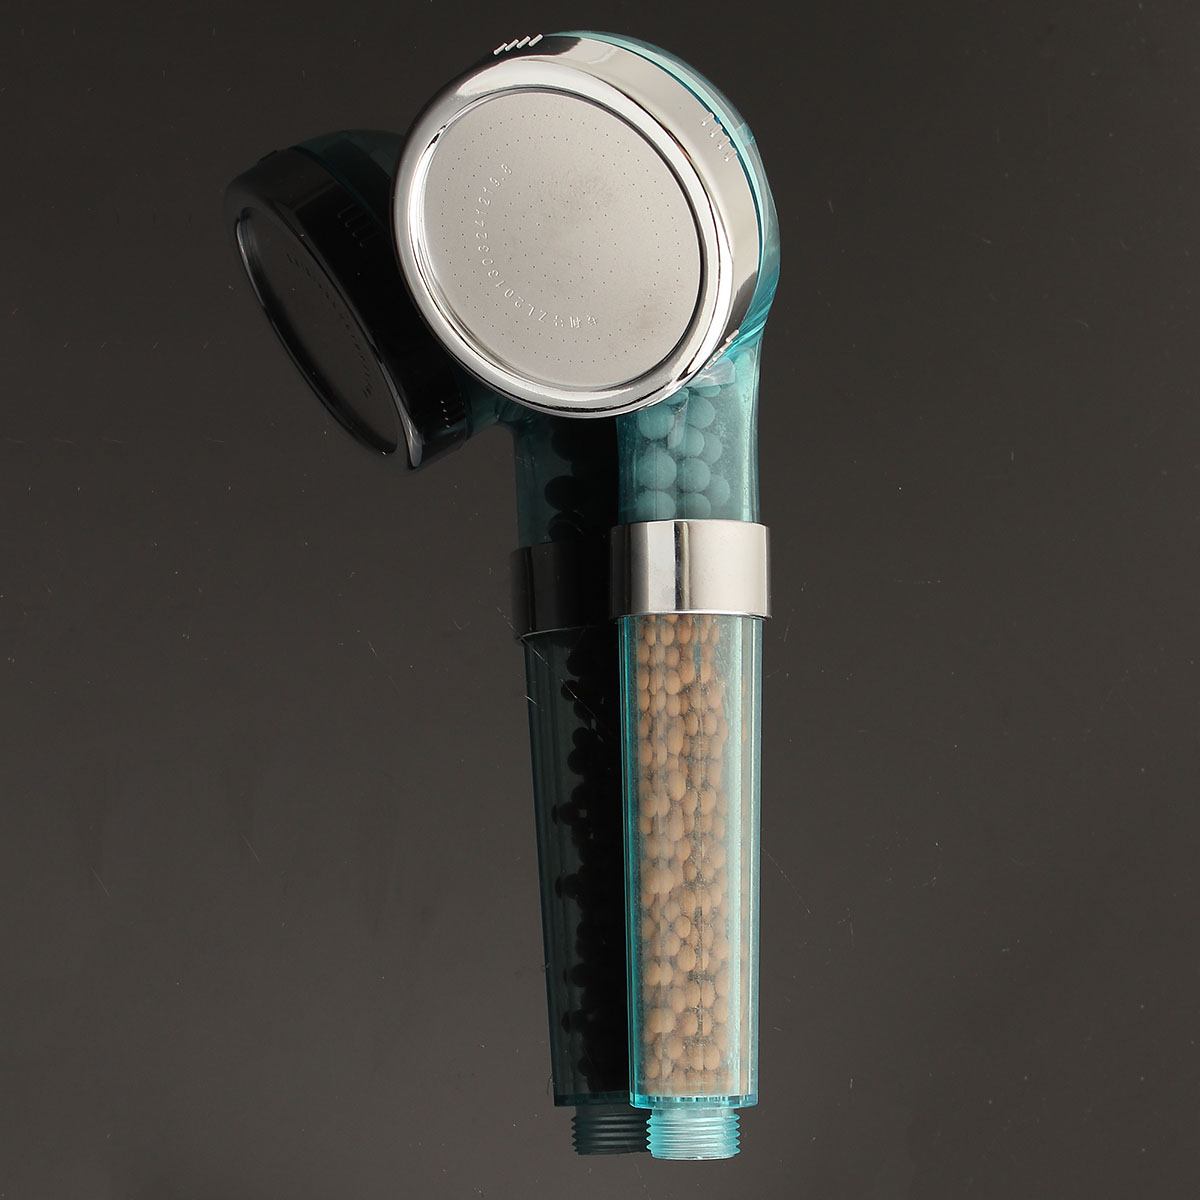 Handheld Negative Ion SPA Pressurize Shower Head Bathroom Healthy Water Saving Spray Nozzle